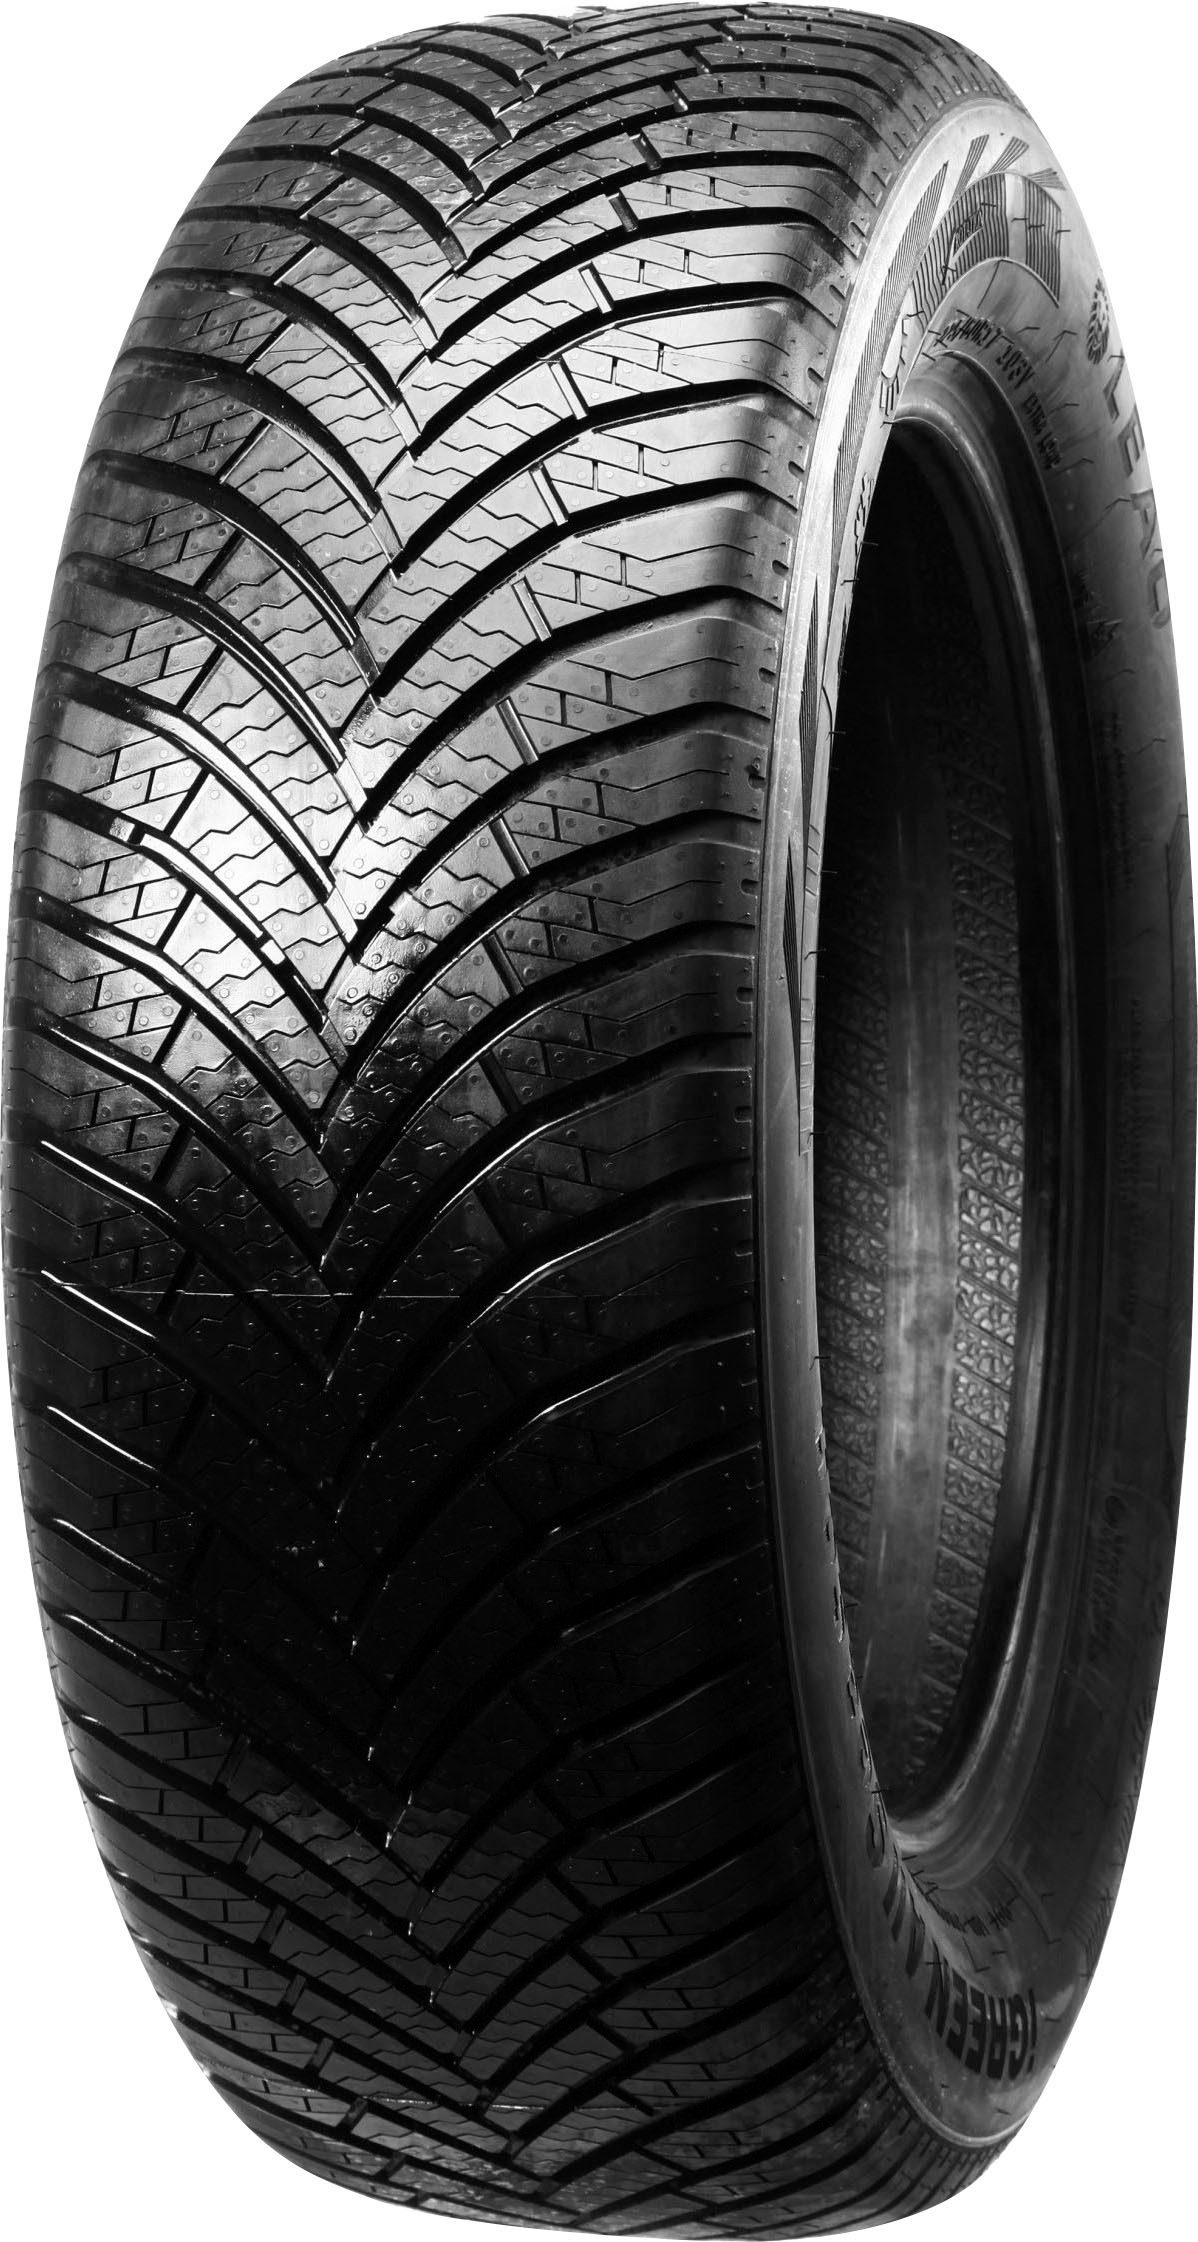 XL Reifen online kaufen | OTTO | Autoreifen